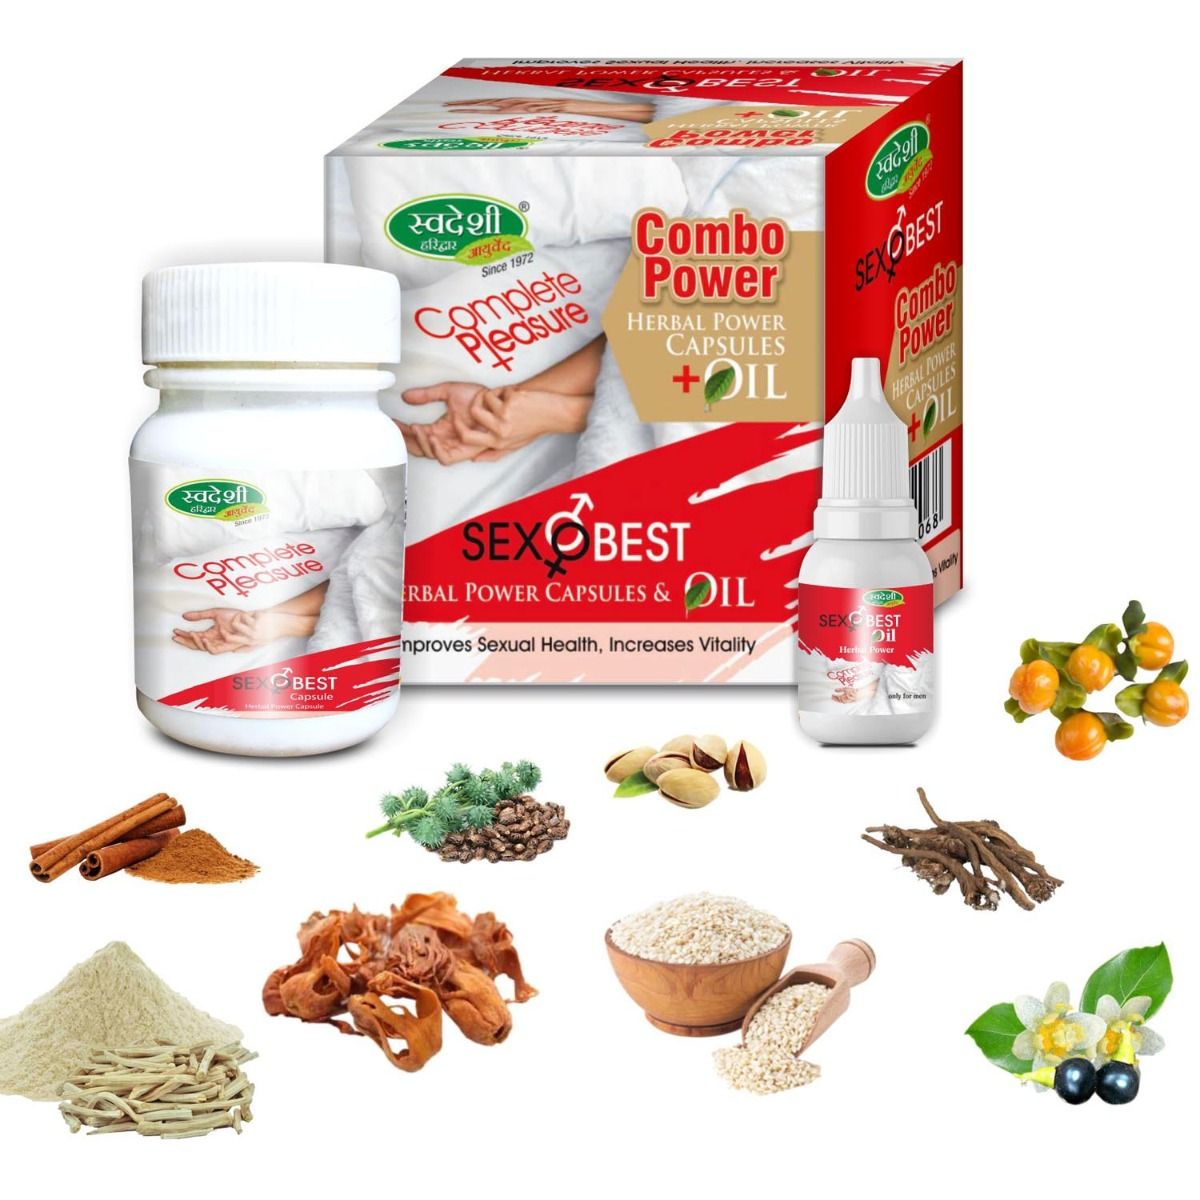 Buy Swadeshi Sexobest Combo Power Kit (Herbal Power Capsules + Oil), 1 Kit Online